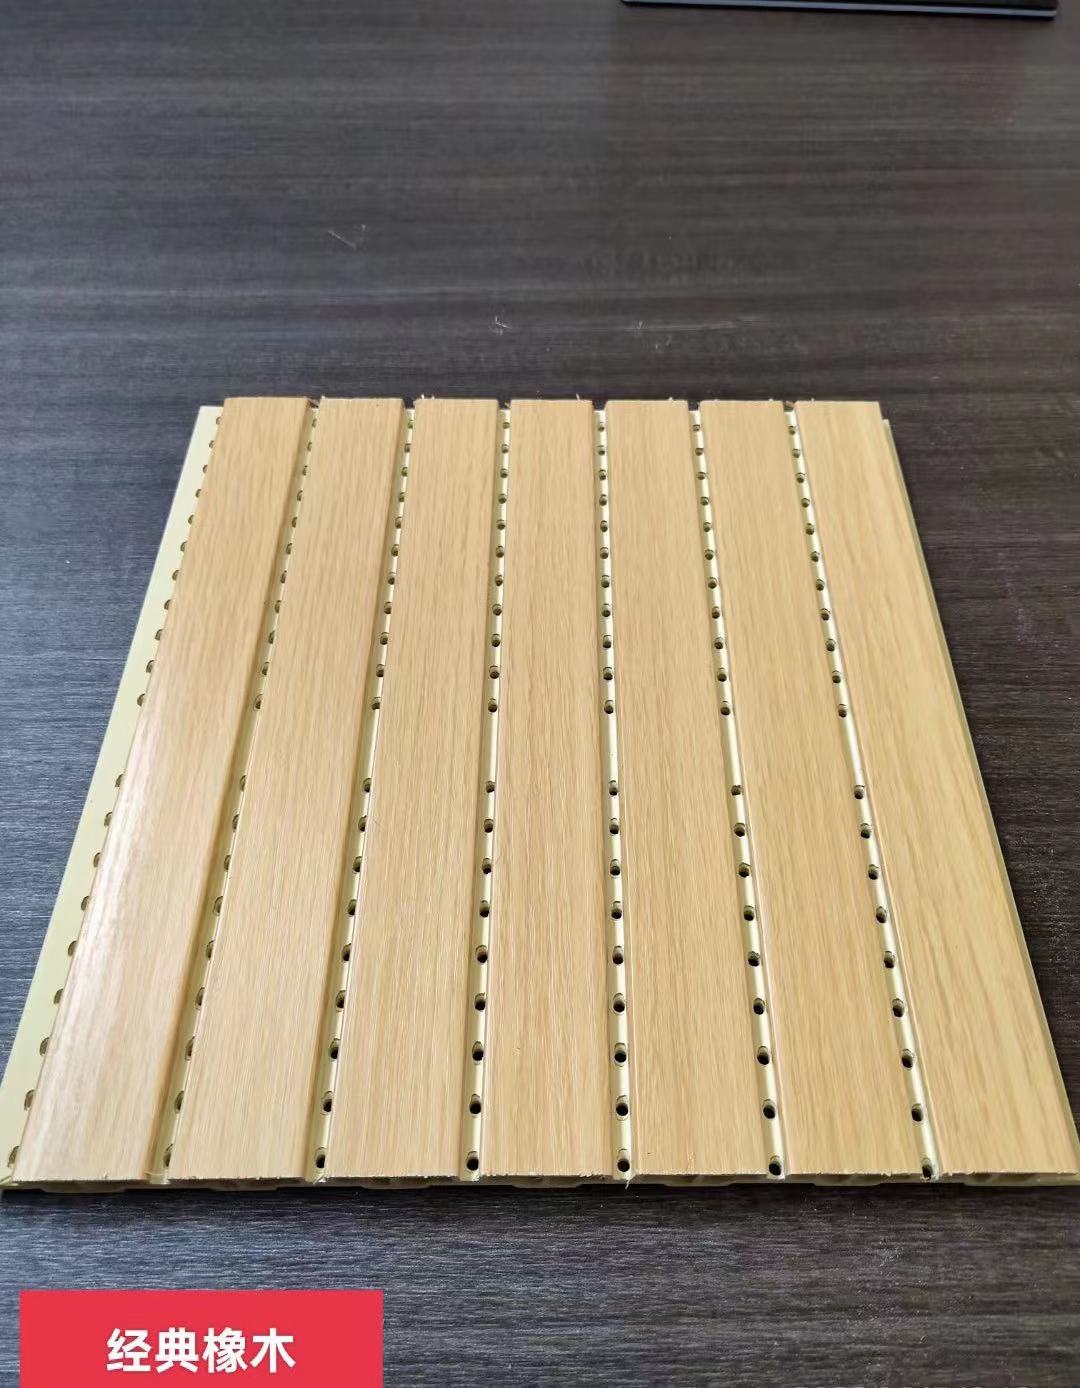 木制吸音板木制吸音板价格_木制吸音板批发_木制吸音板报价_木制吸音板出售-金成林装饰材料